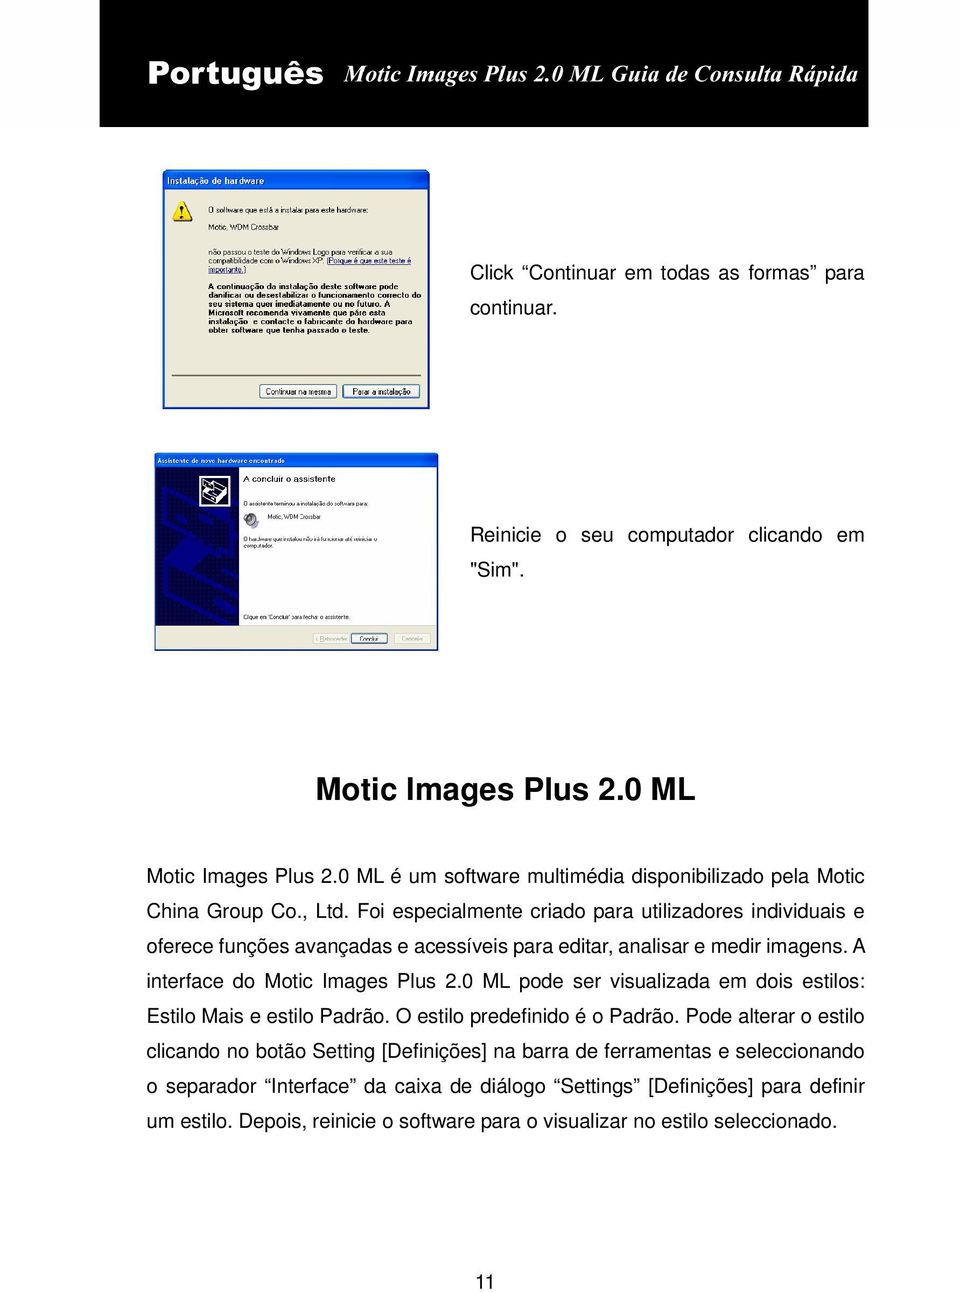 Foi especialmente criado para utilizadores individuais e oferece funções avançadas e acessíveis para editar, analisar e medir imagens. A interface do Motic Images Plus 2.